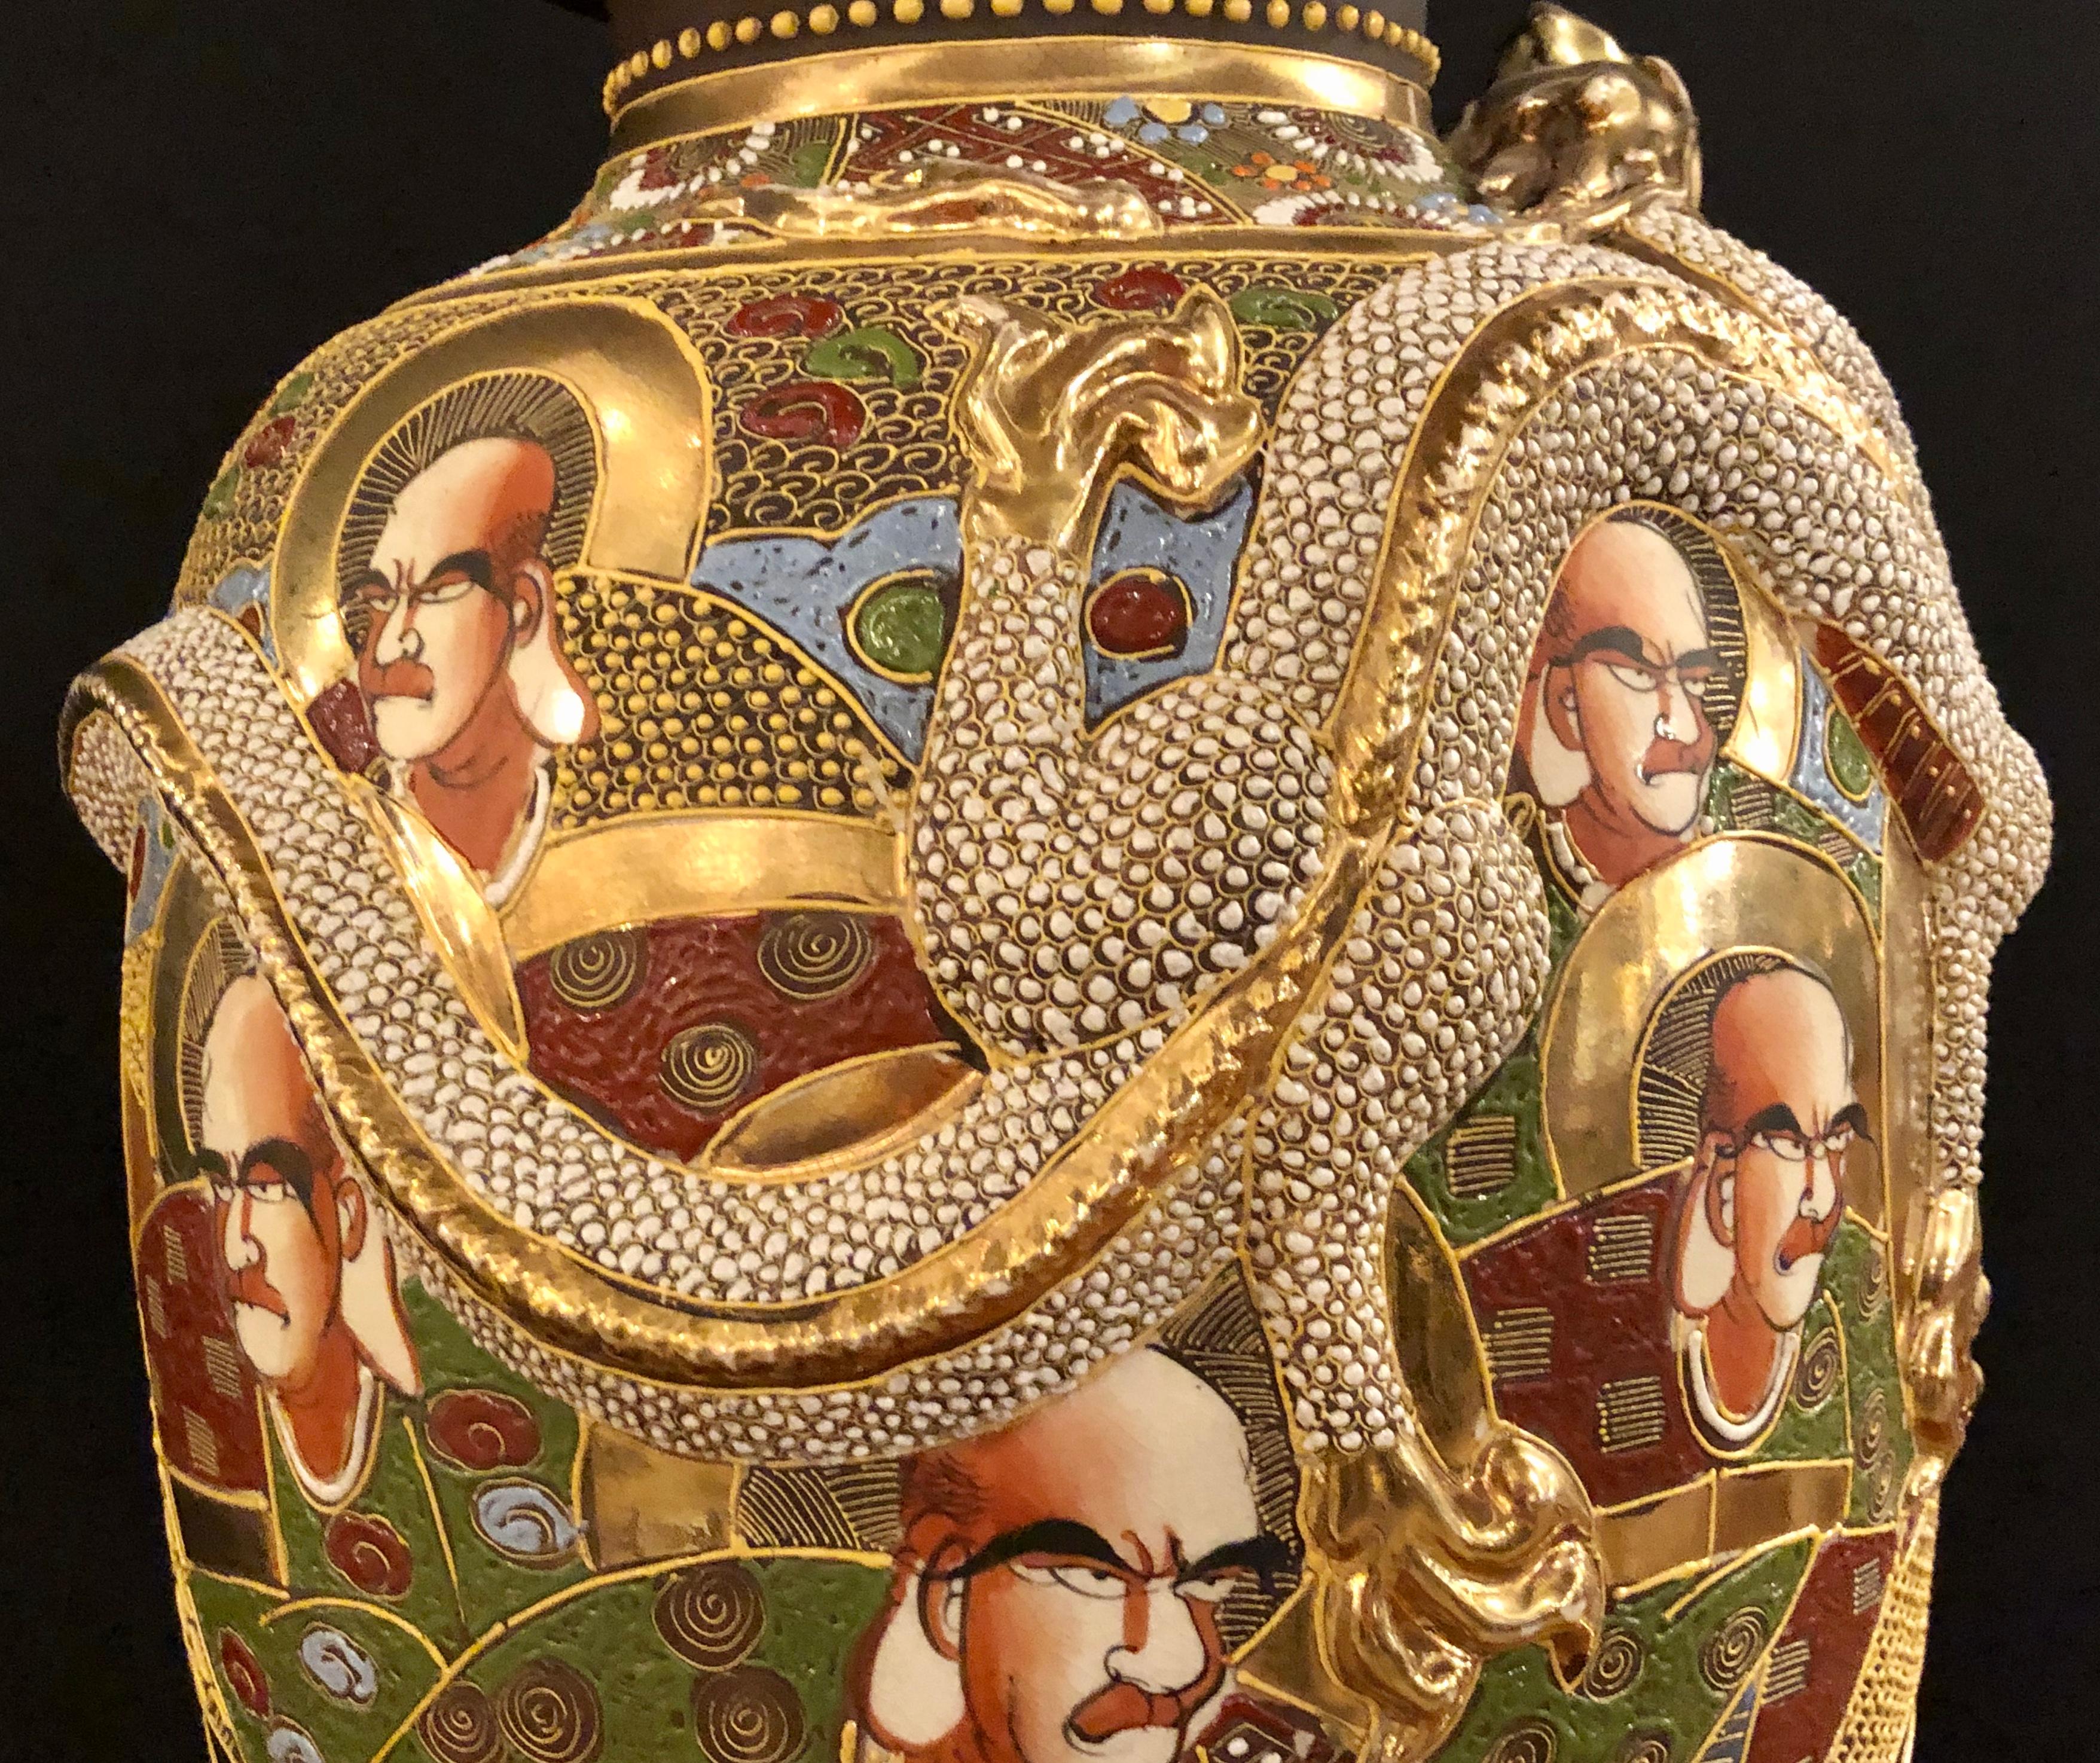 Pottery Japanese Satsuma Vase Large and Impressive Gilt Gold Dragon Decorated, Signed